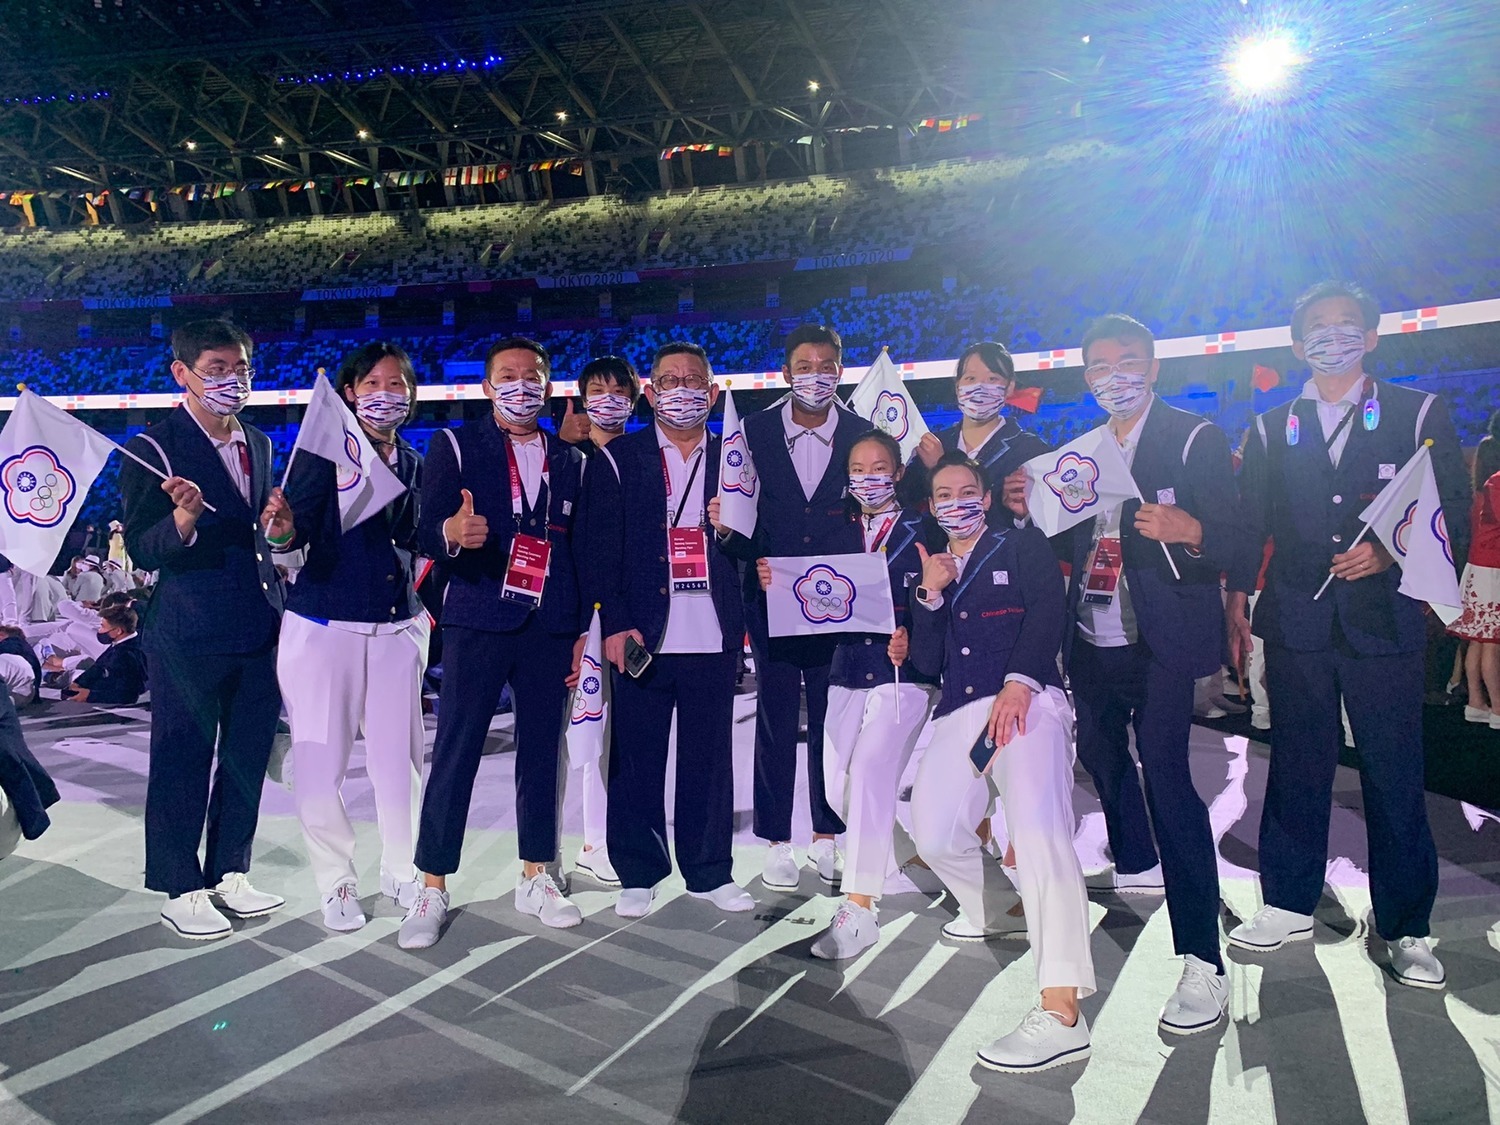 東京奧運開幕 總統：謝謝日本將一切化為可能 | 政治 | 新頭殼 New